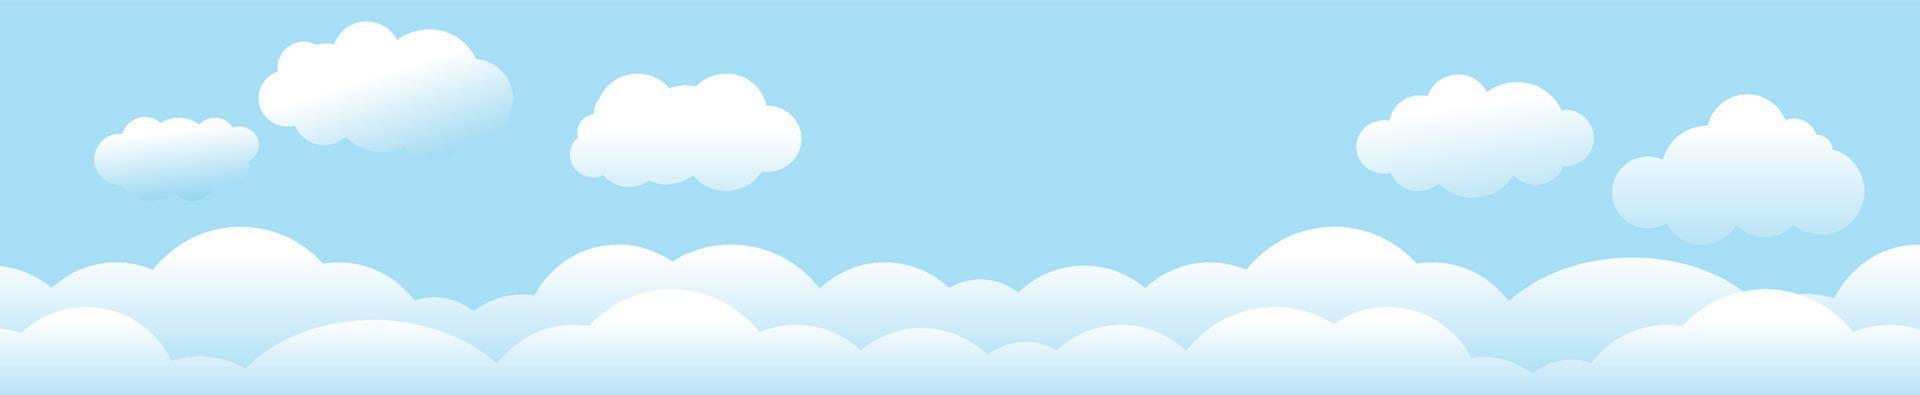 nuvens e céu, fundo de natureza meteorológica, banner horizontal, ilustração vetorial. vetor